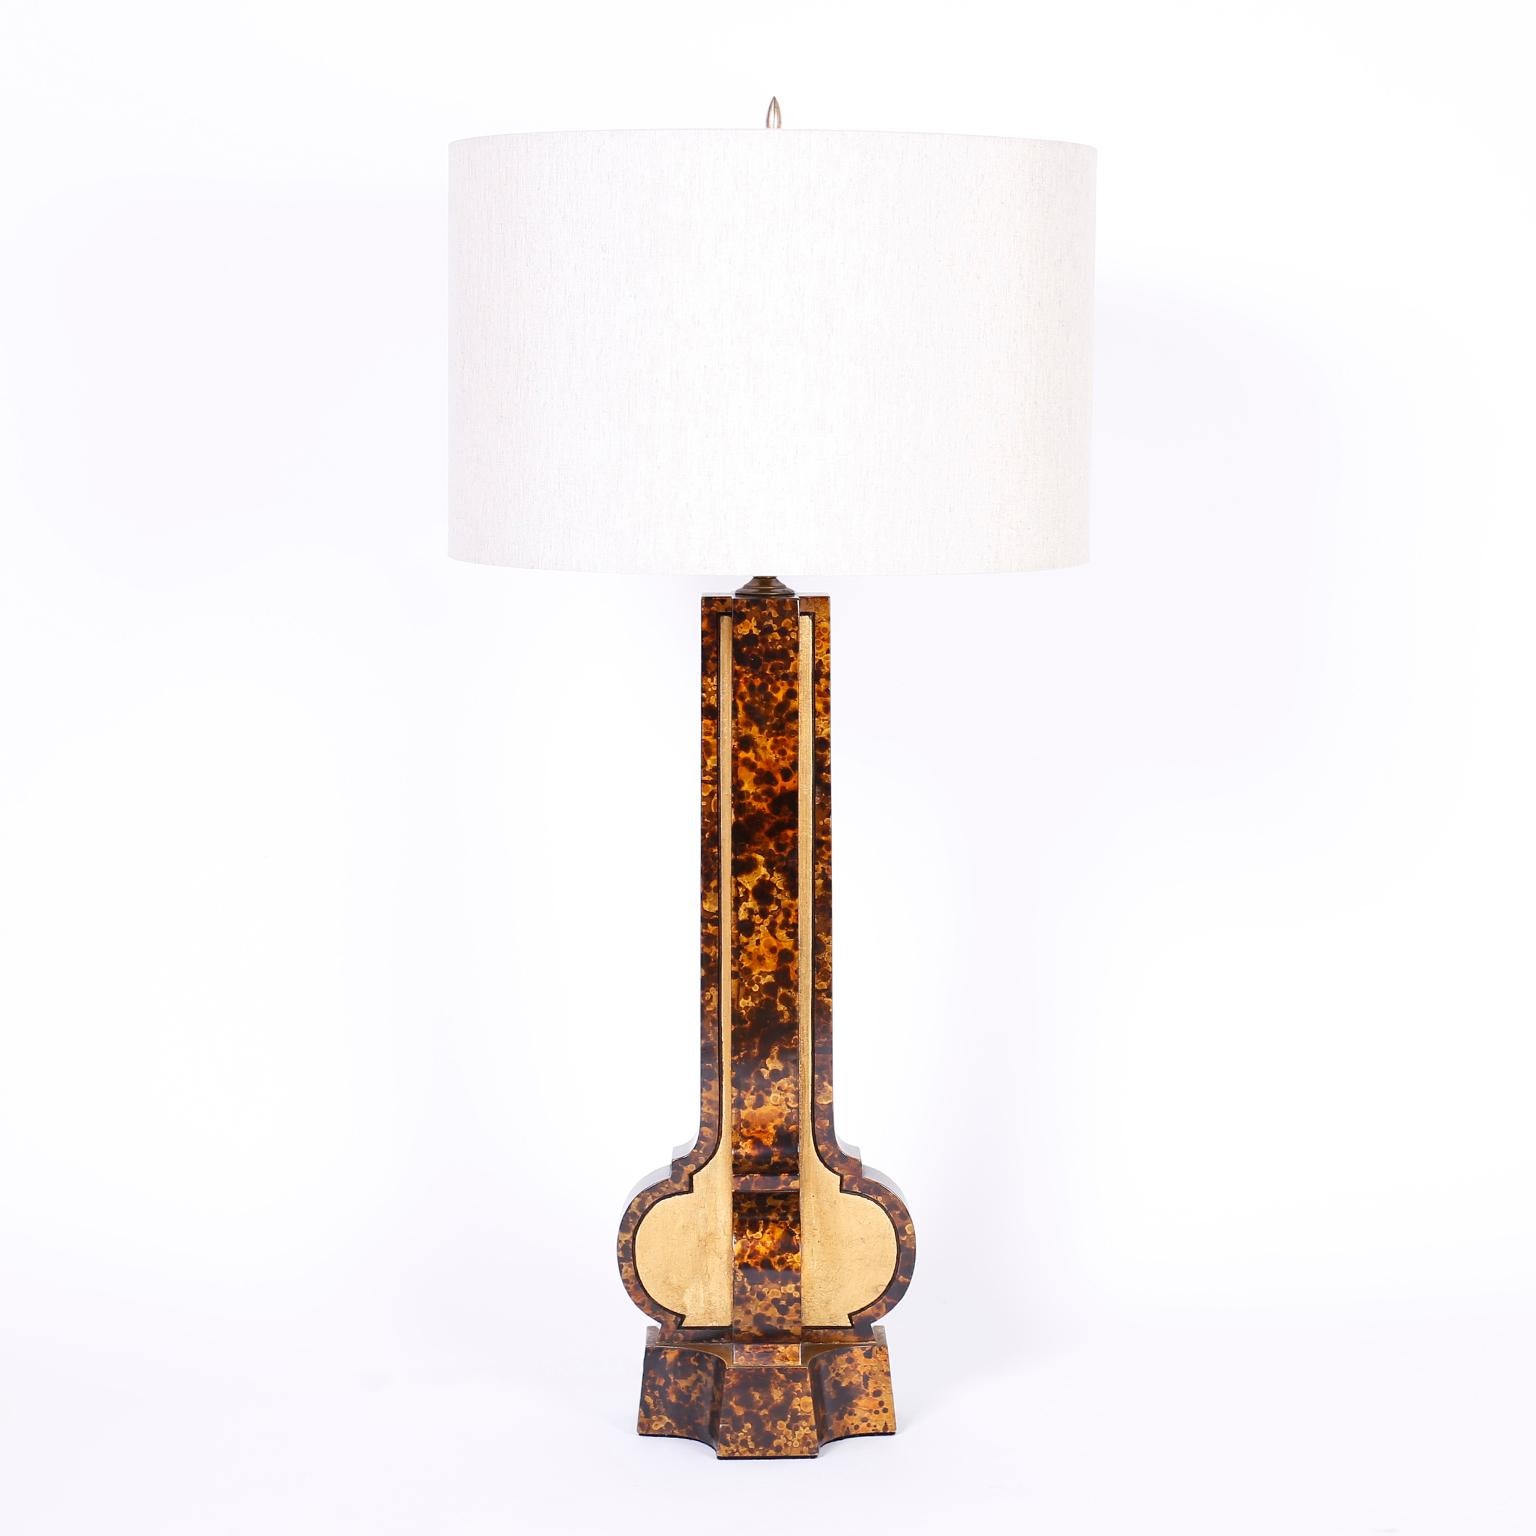 Paire de lampes de table du milieu du siècle avec une forme classique stylisée moderne, fabriquée en bois avec une technique de laque fausse tortue séparée par des panneaux de feuilles d'or.